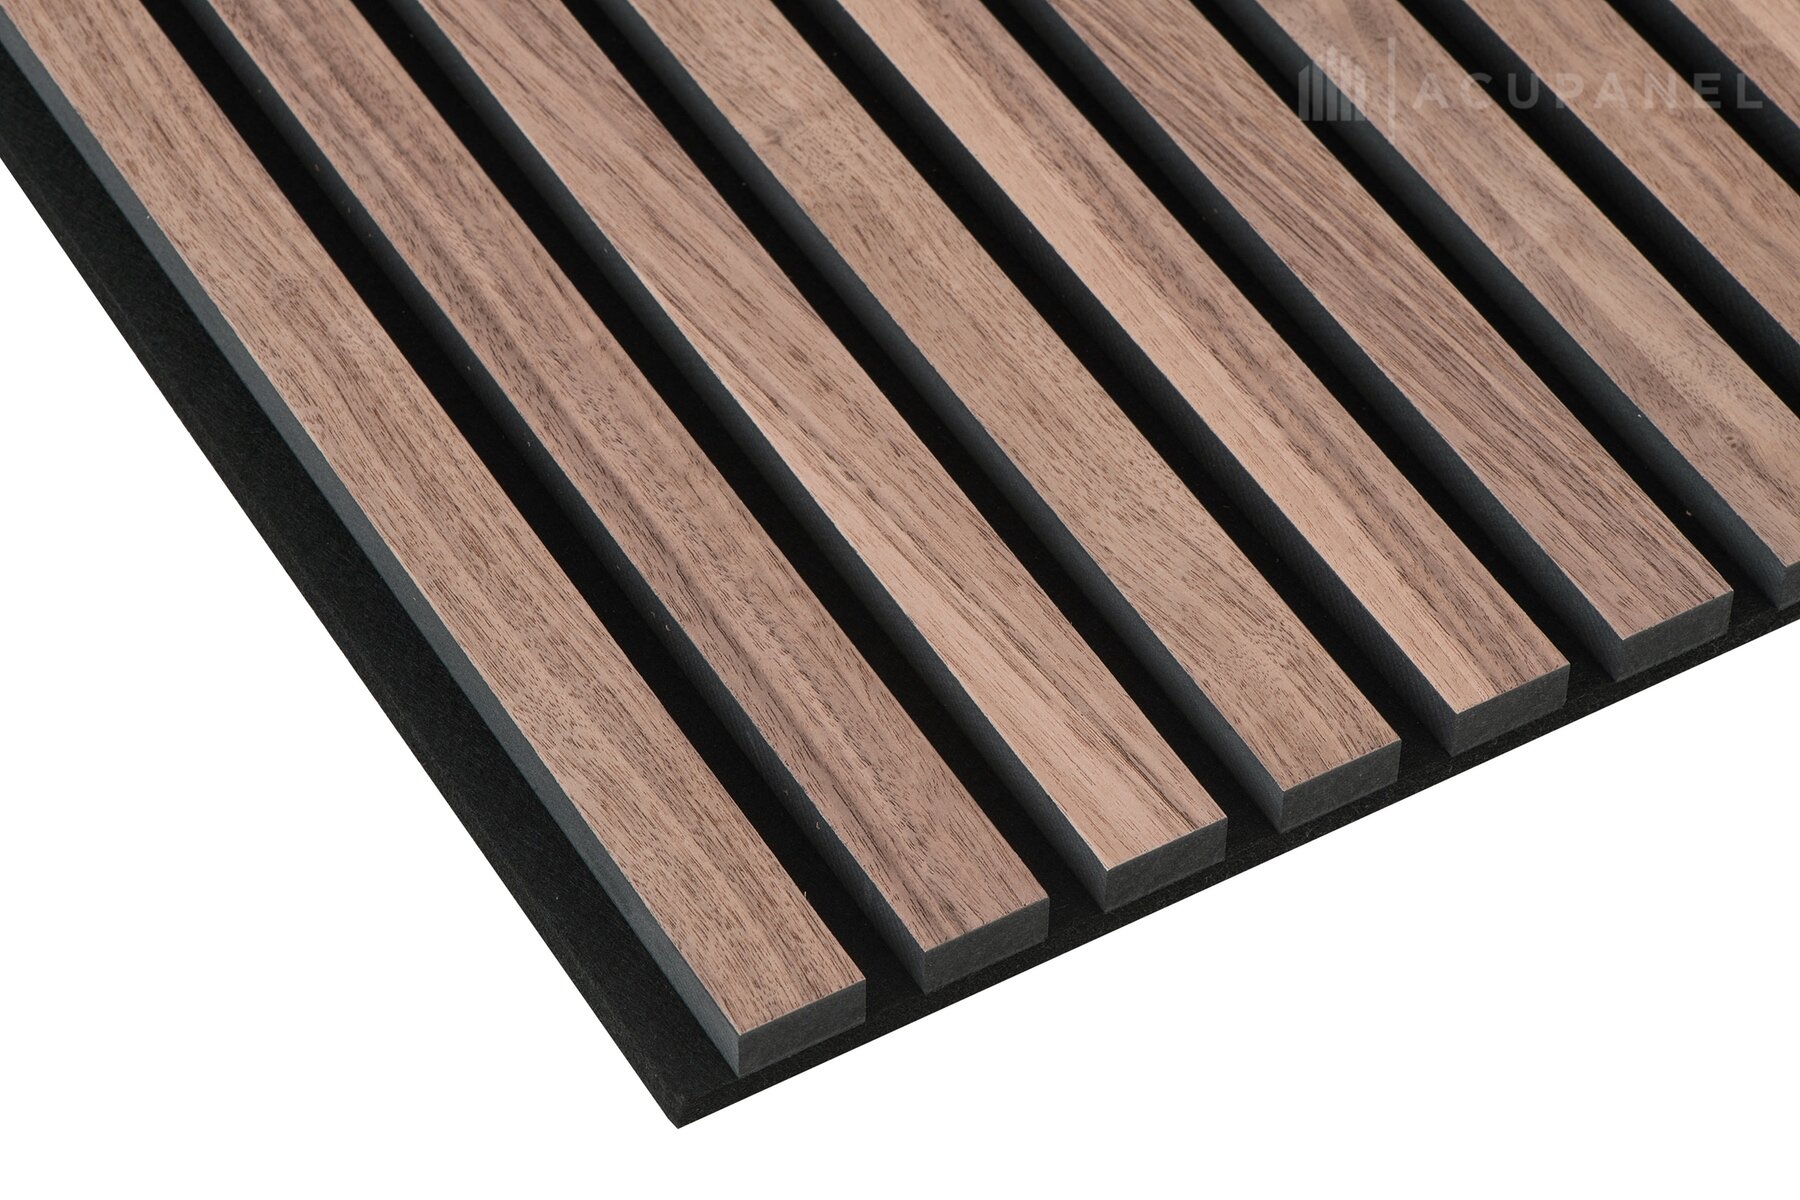 Acoustic Wood Slat Panels - www.inf-inet.com